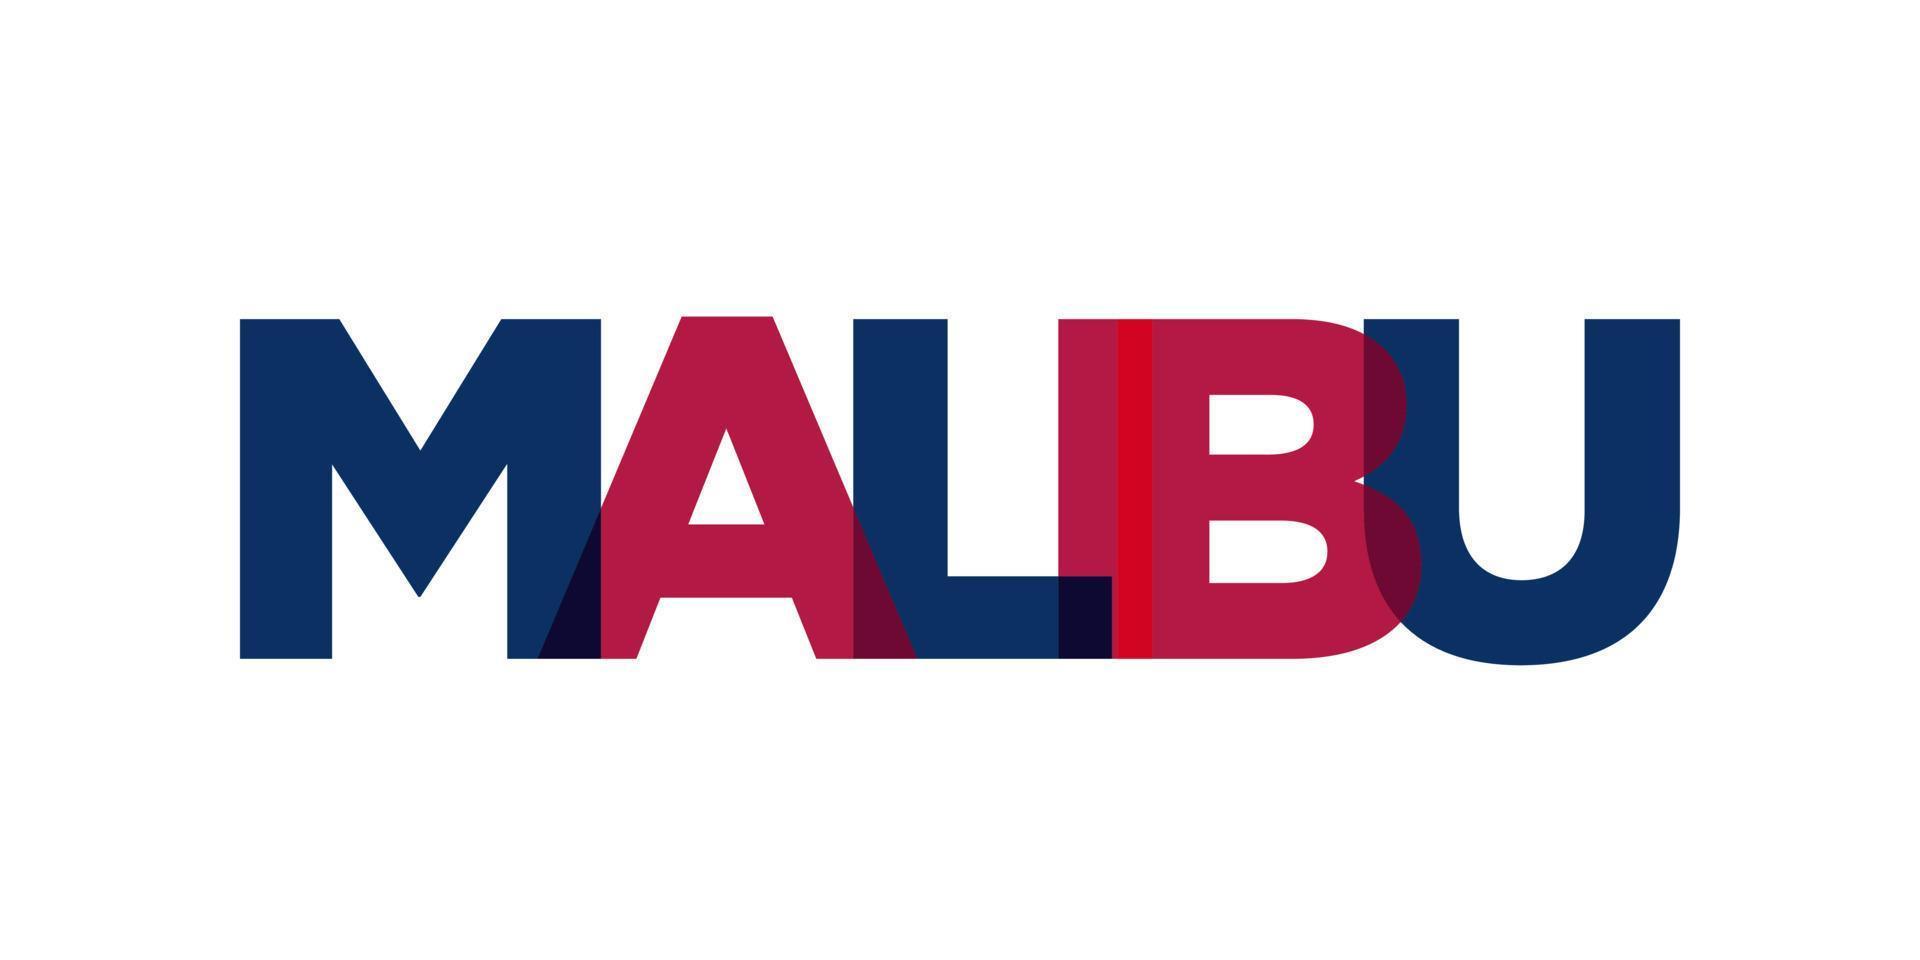 malibu, Kalifornien, USA typografi slogan design. Amerika logotyp med grafisk stad text för skriva ut och webb. vektor